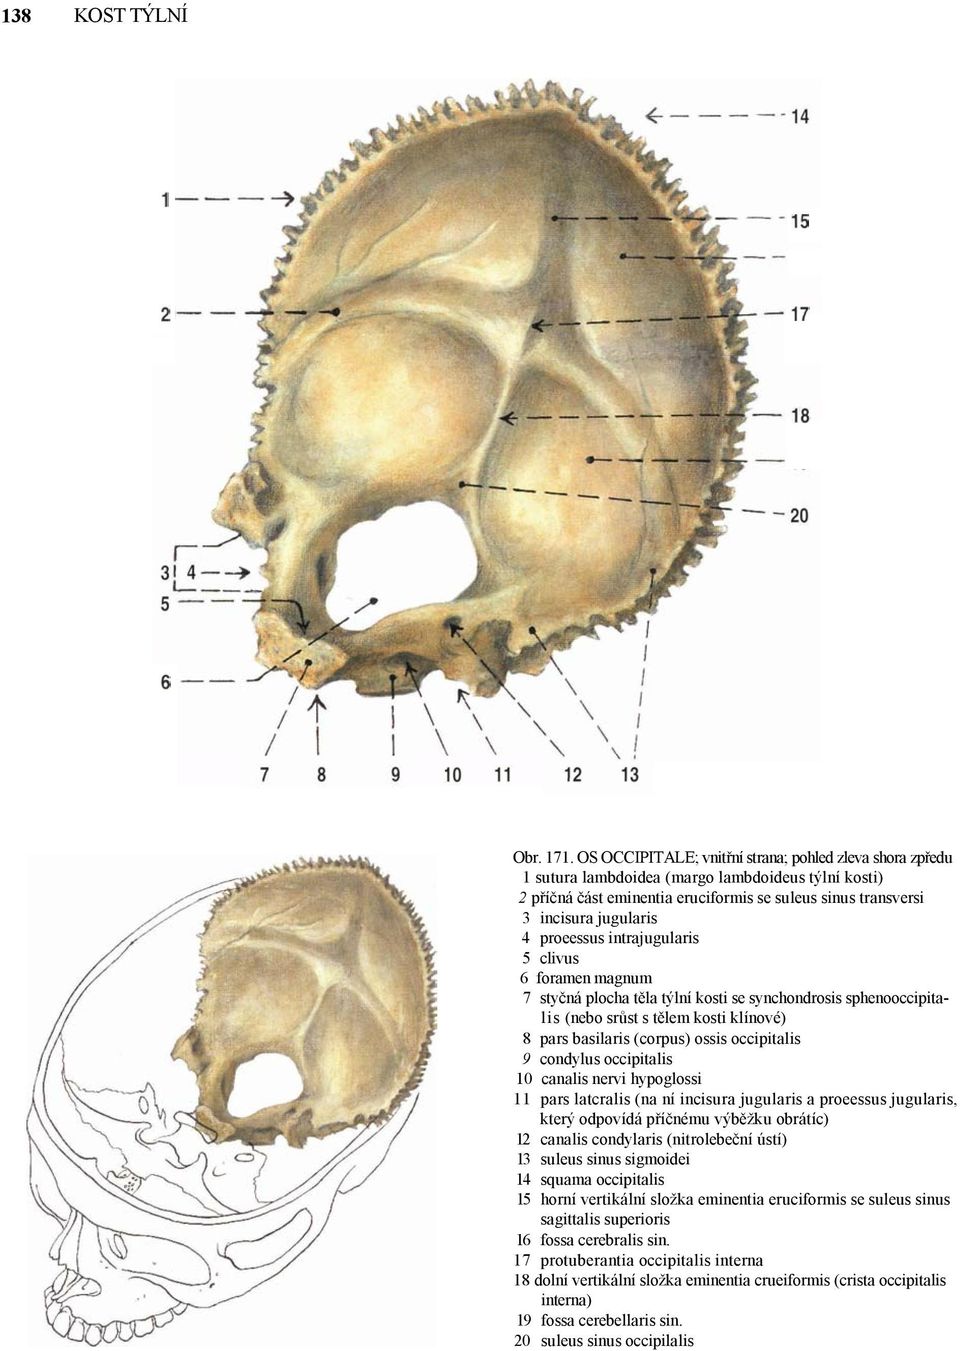 proeessus intrajugularis 5 clivus 6 foramen magnum 7 styčná plocha těla týlní kosti se synchondrosis sphenooccipitalis (nebo srůst s tělem kosti klínové) 8 pars basilaris (corpus) ossis occipitalis 9